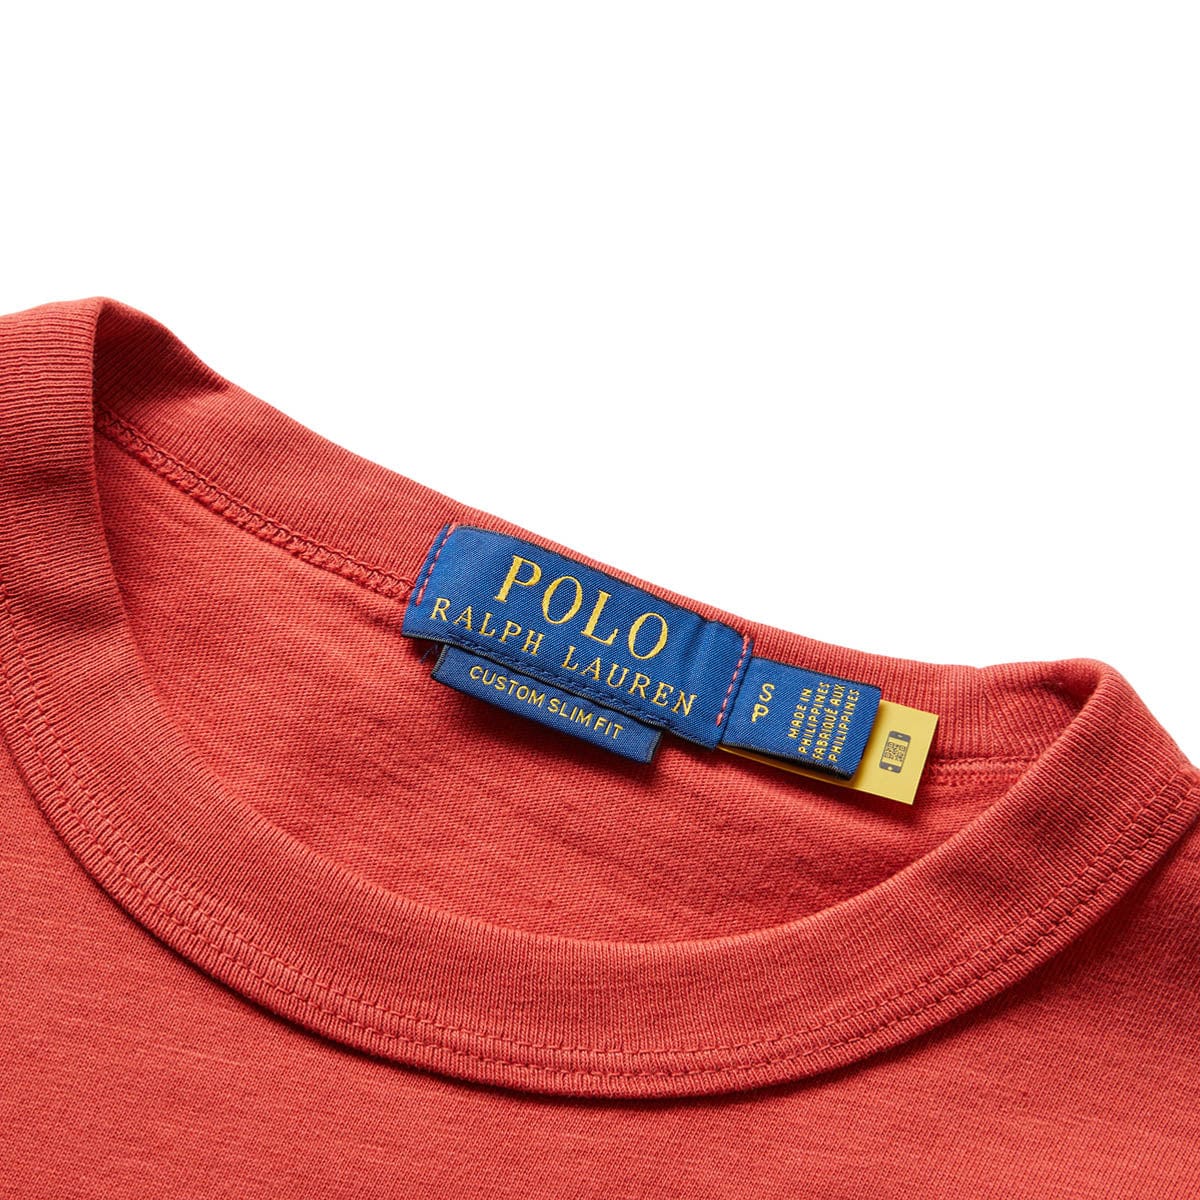 Polo Ralph Lauren T-Shirts LUNAR NEW YEAR NOVELTY RABBIT T-SHIRT